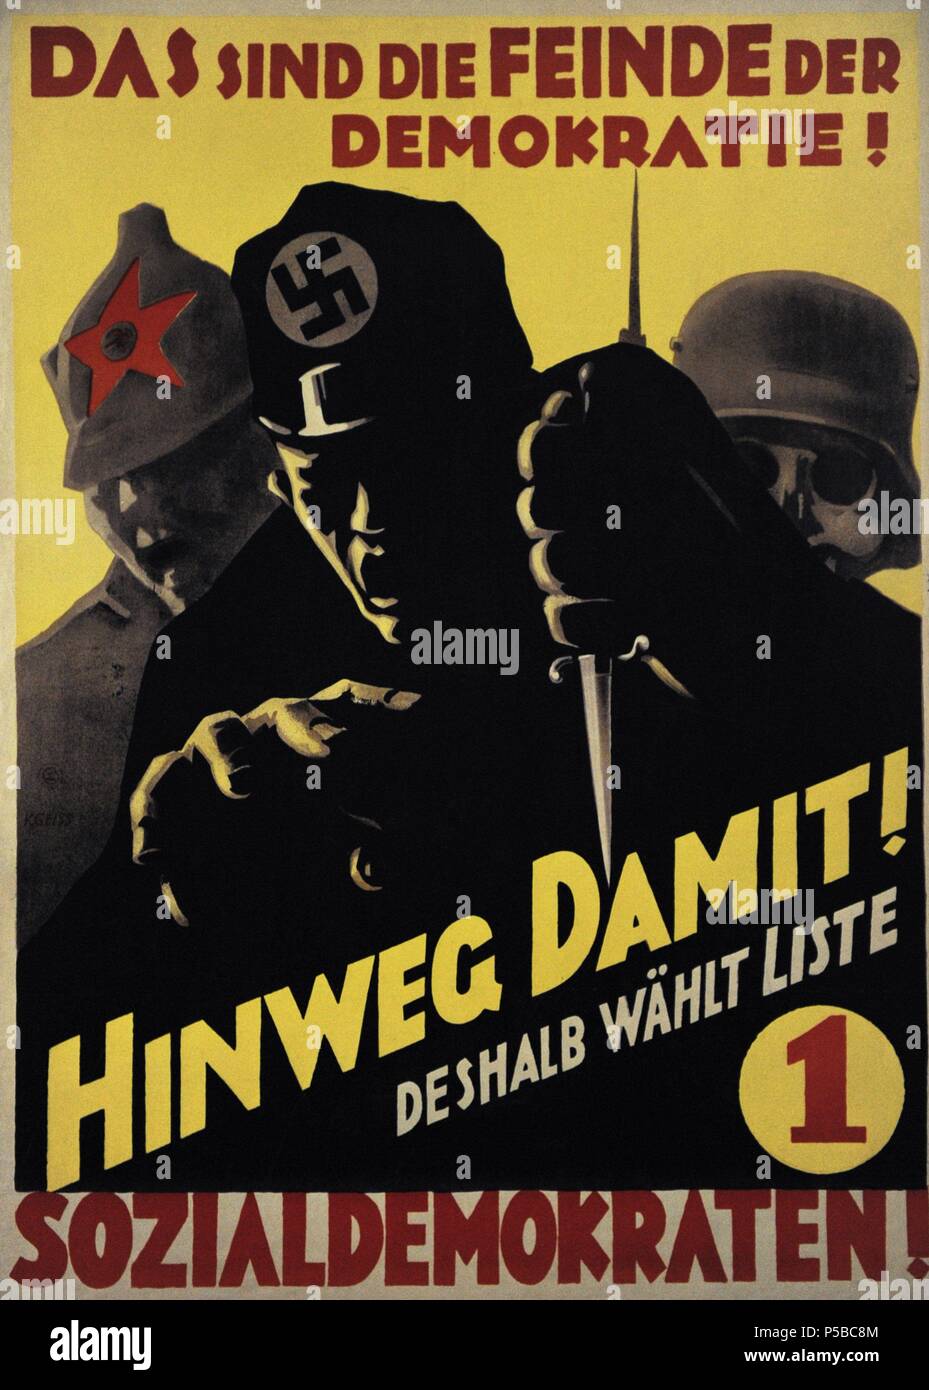 L'affiche de la SPD pour des élections du Reichstag. Septembre, 1930. Ils sont les ennemis de la démocratie ! Supprimer que et social-démocrate vote !. L'Allemagne. Banque D'Images